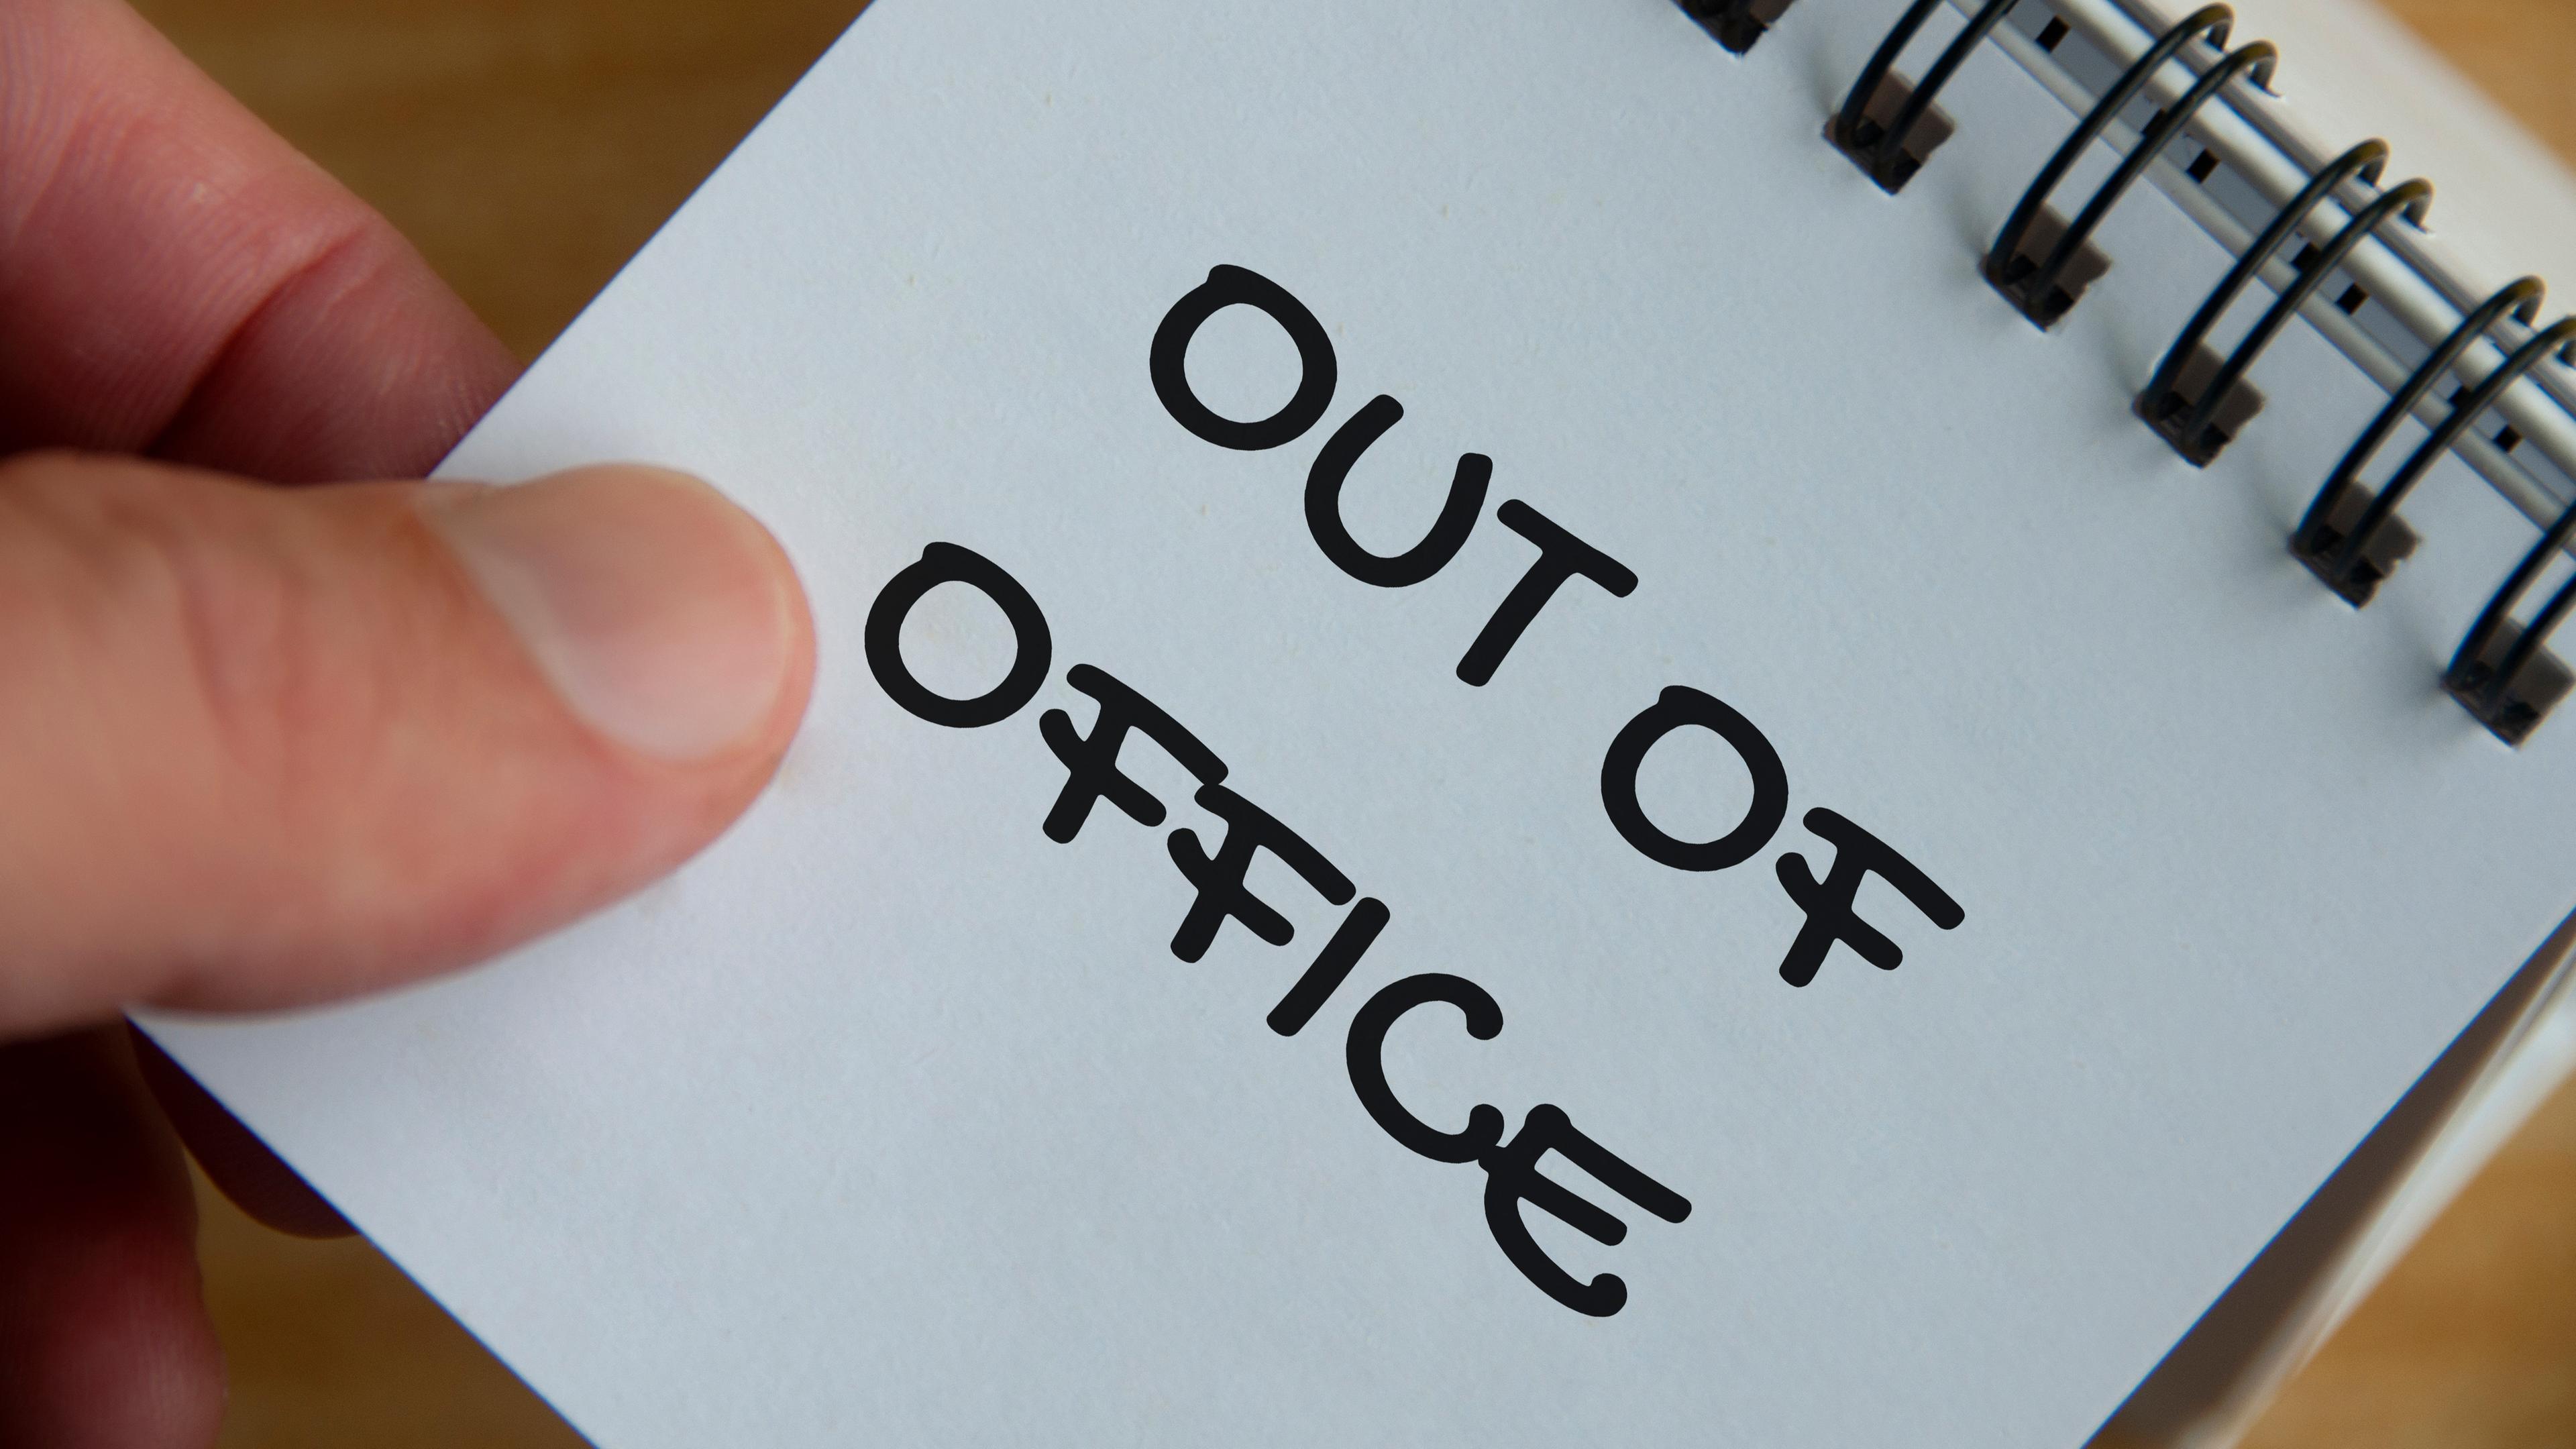 Eine Hand hält einen Notizblock, auf dem "Out of Office" geschrieben steht.